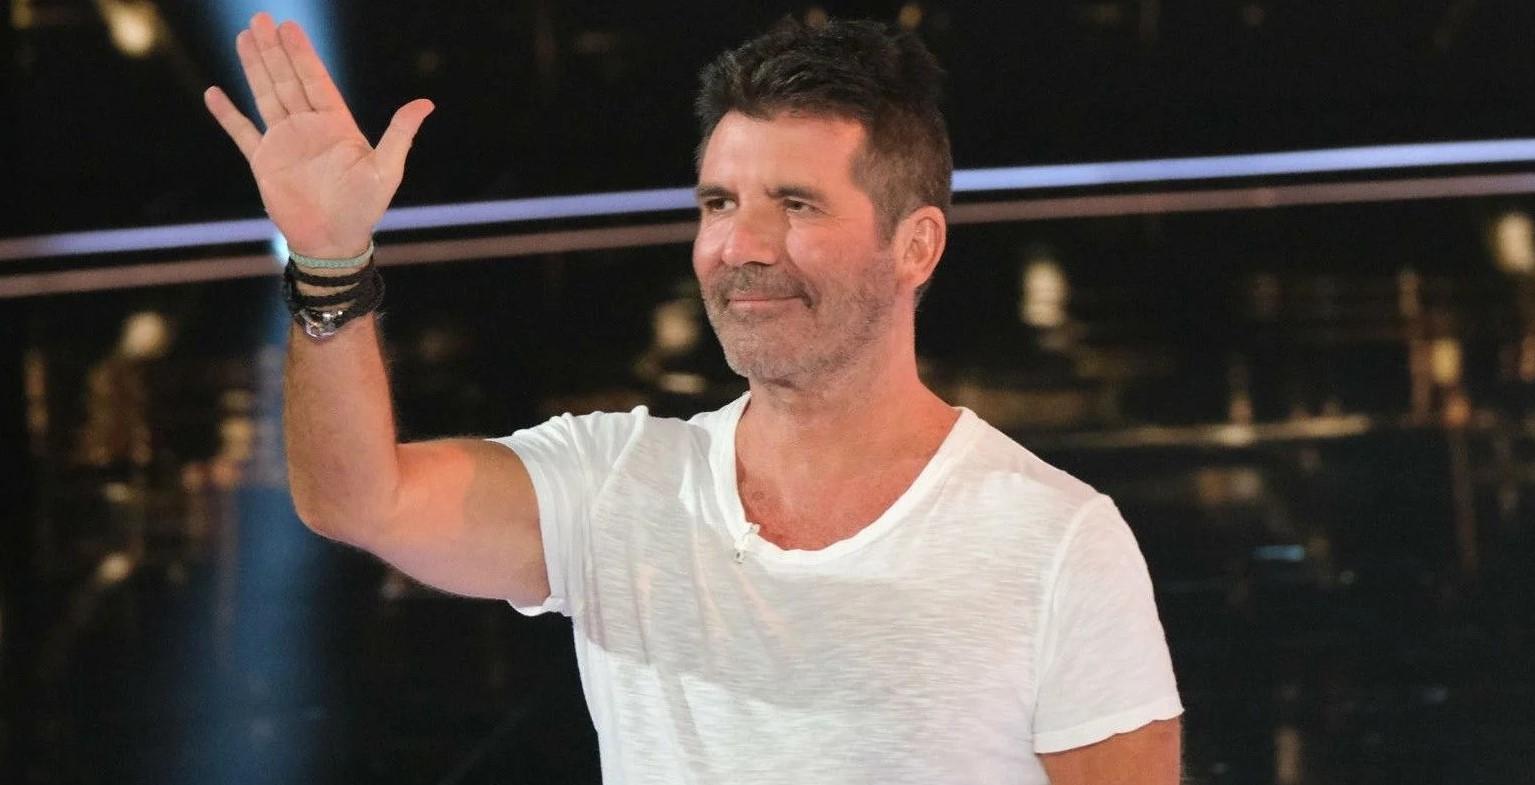 Britanski talent šou "X Factor" prestaje sa emitiranjem nakon 17 godina